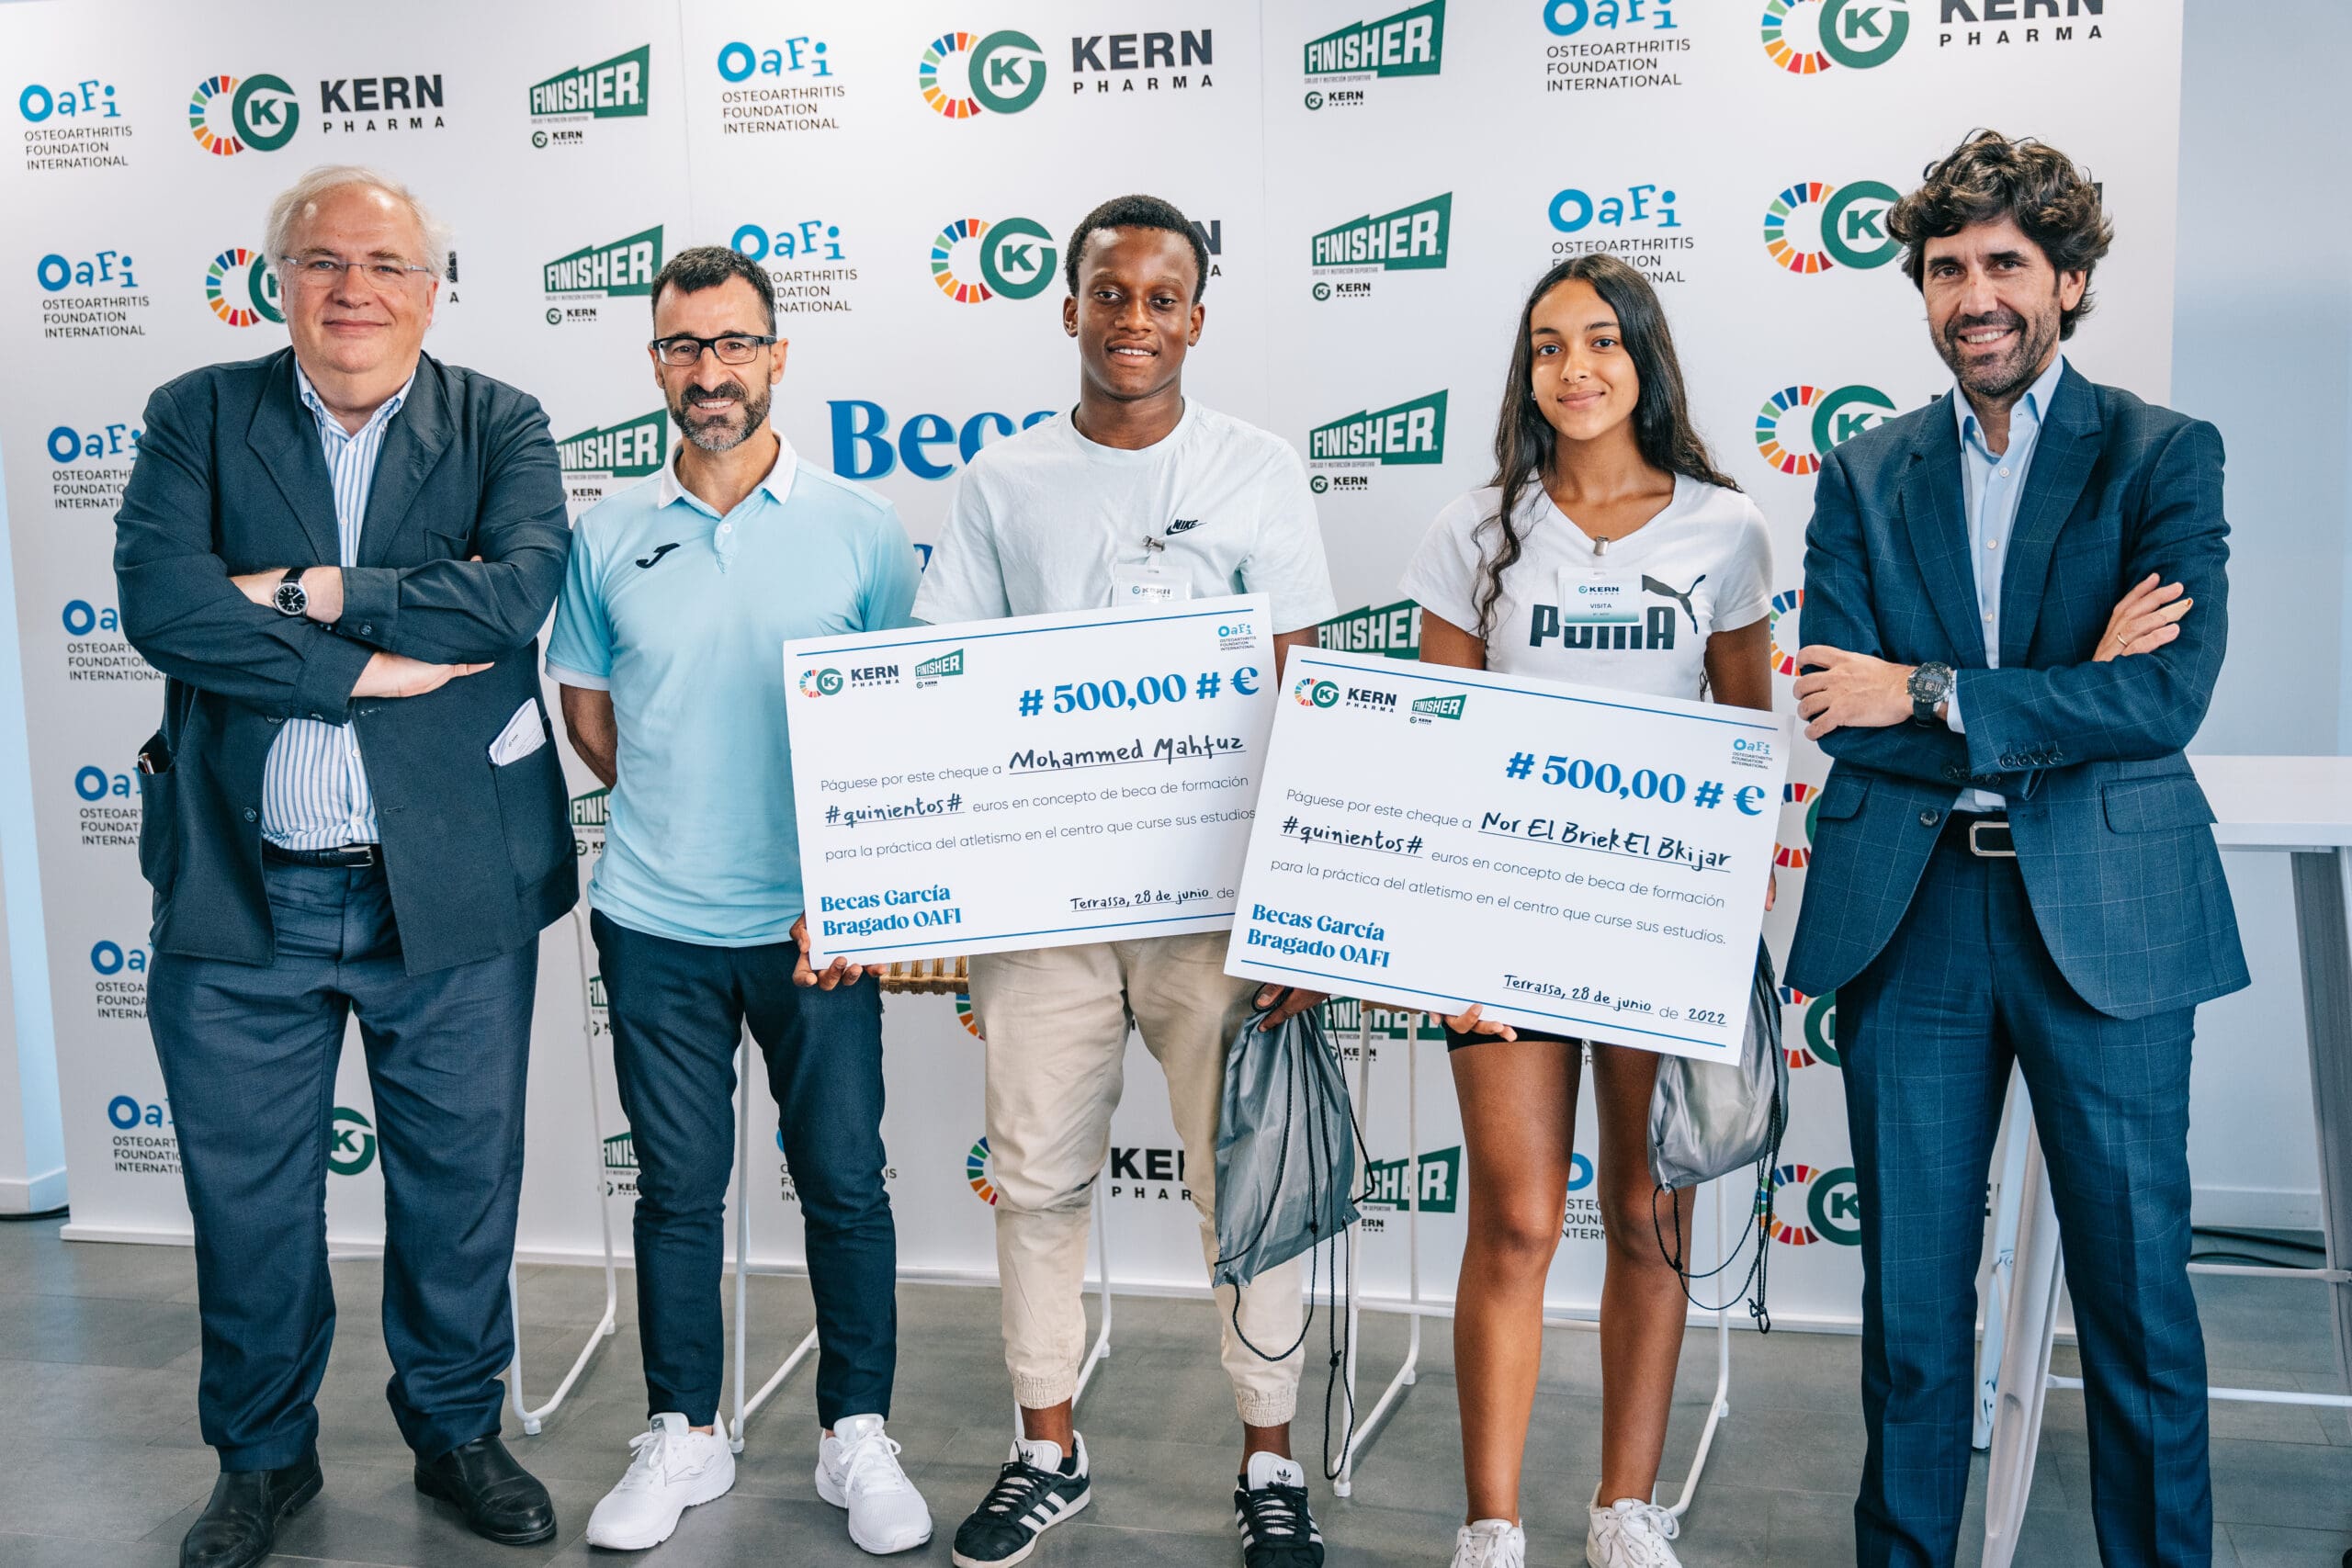 Chuso García Bragado, la Fundación OAFI y Kern Pharma entregan las primeras becas García BragadO–OAFI – Kern Pharma a futuras promesas del atletismo